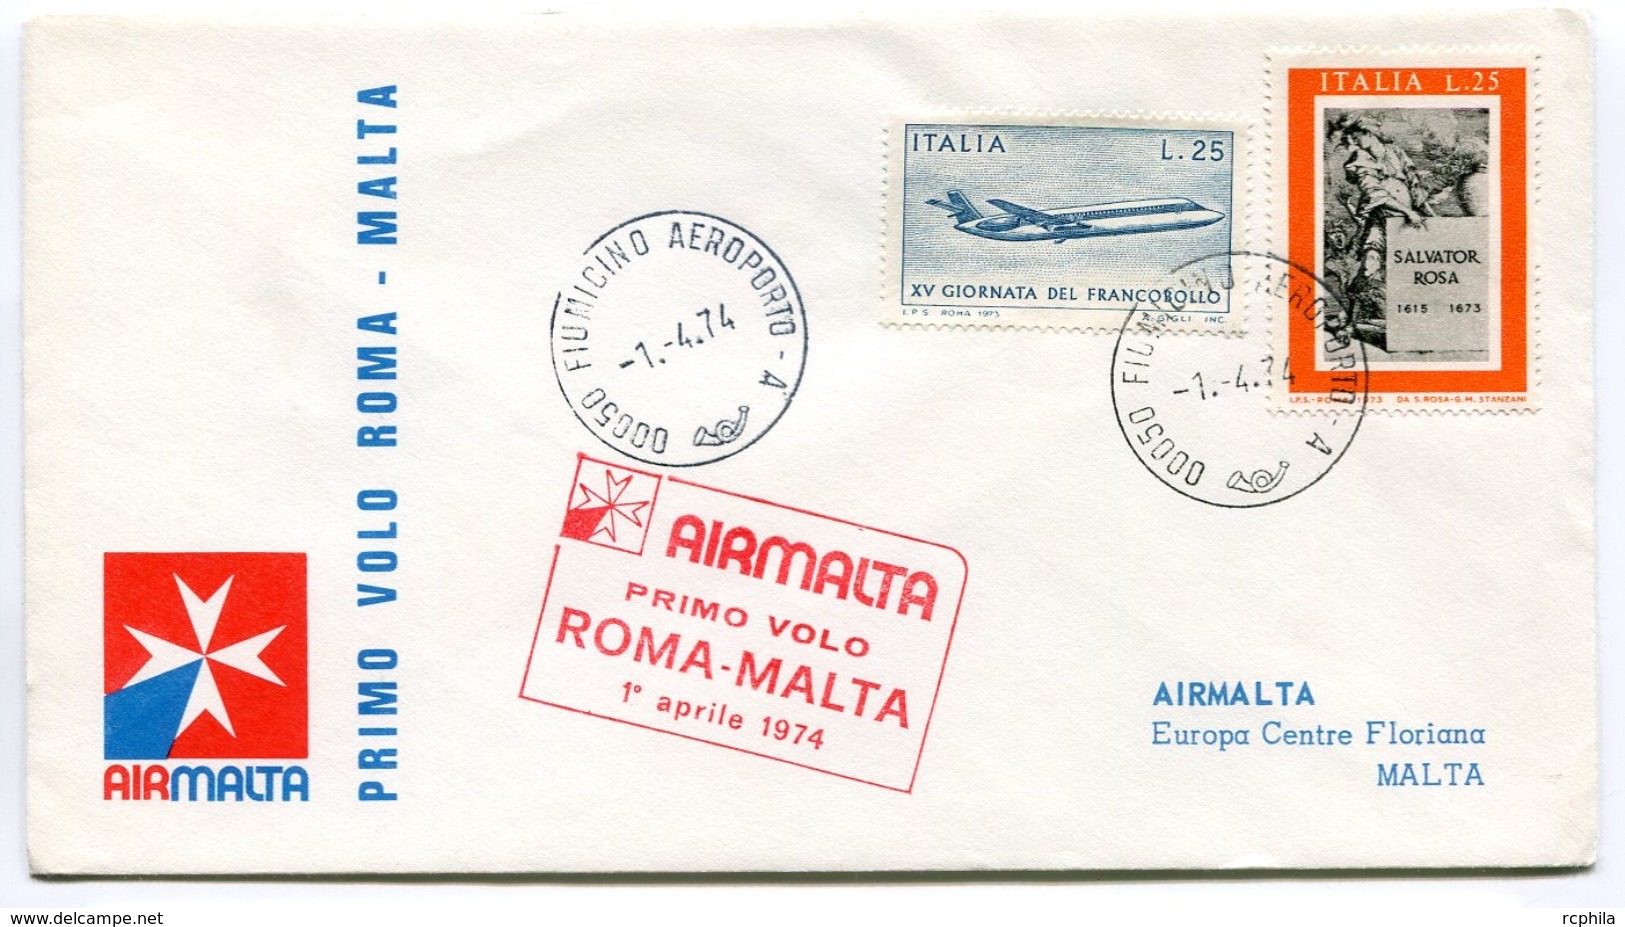 RC 6721 MALTE AIRMALTA 1974 1er VOL ROMA ITALIE - MALTA FFC LETTRE COVER - Malta